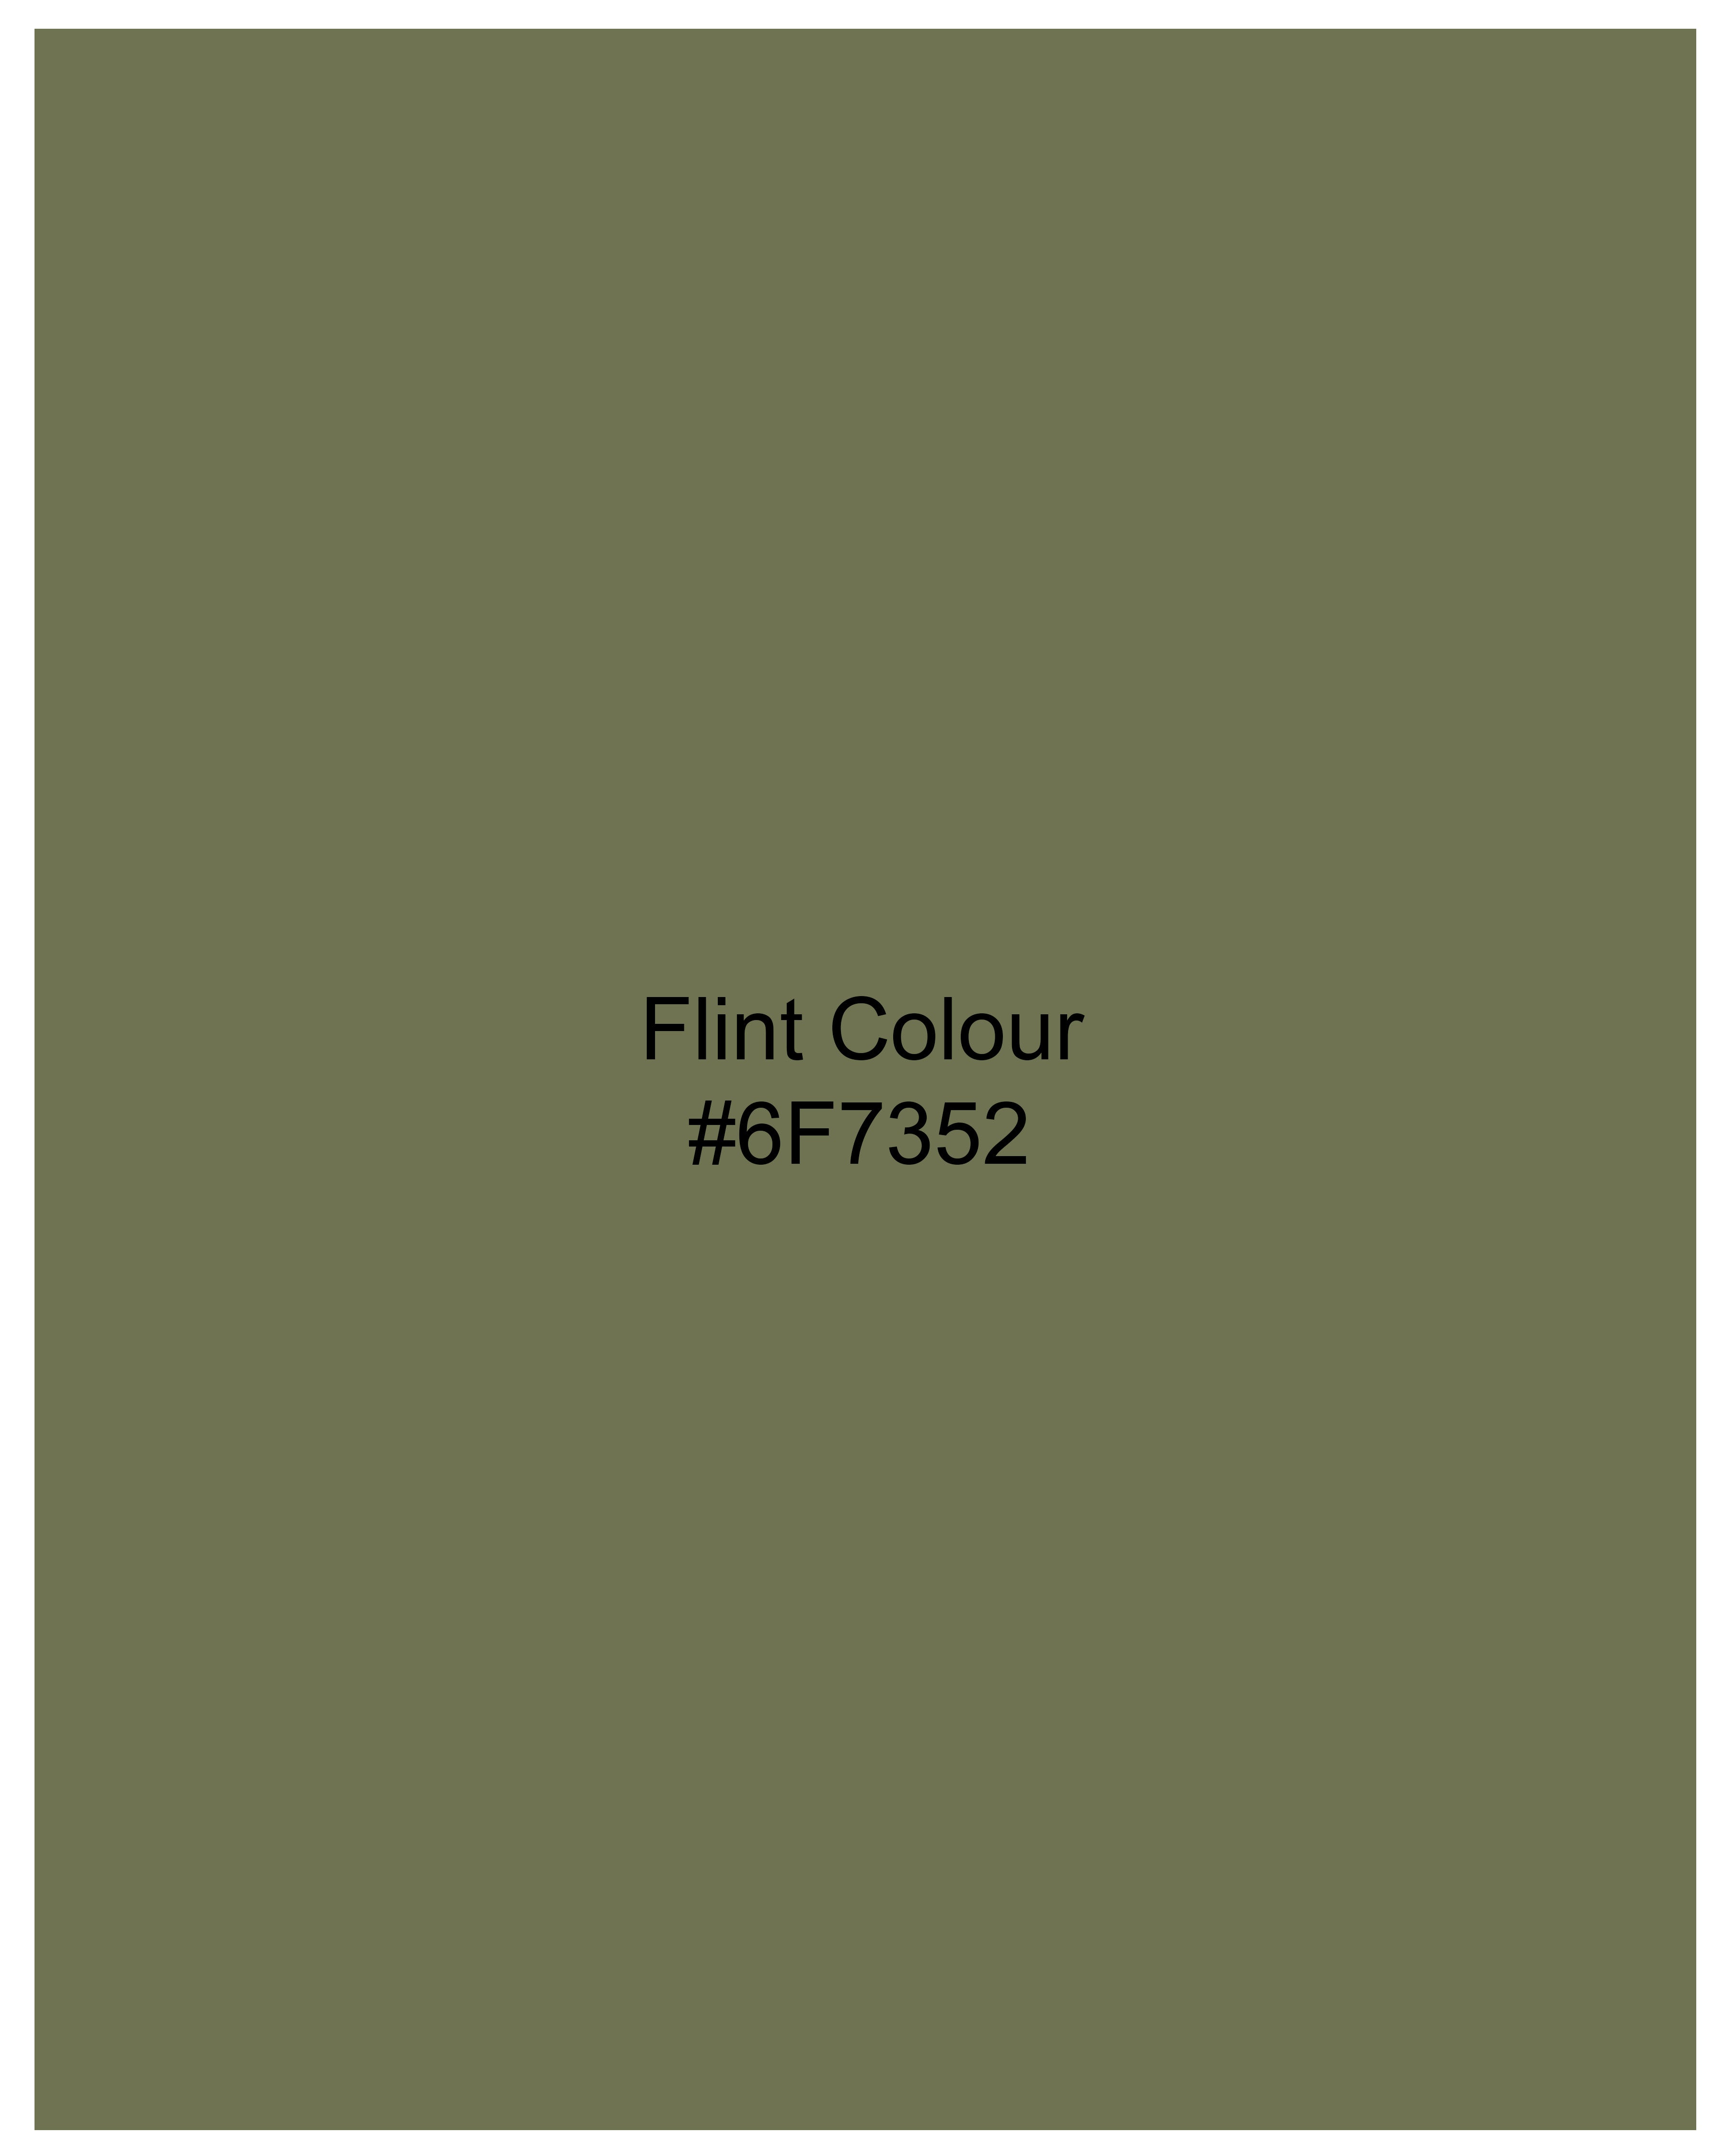 Flint Green With Black Sleeve and Premium Cotton Designer Kurta Shirt 9718-KS-38, 9718-KS-H-38, 9718-KS-39, 9718-KS-H-39, 9718-KS-40, 9718-KS-H-40, 9718-KS-42, 9718-KS-H-42, 9718-KS-44, 9718-KS-H-44, 9718-KS-46, 9718-KS-H-46, 9718-KS-48, 9718-KS-H-48, 9718-KS-50, 9718-KS-H-50, 9718-KS-52, 9718-KS-H-52